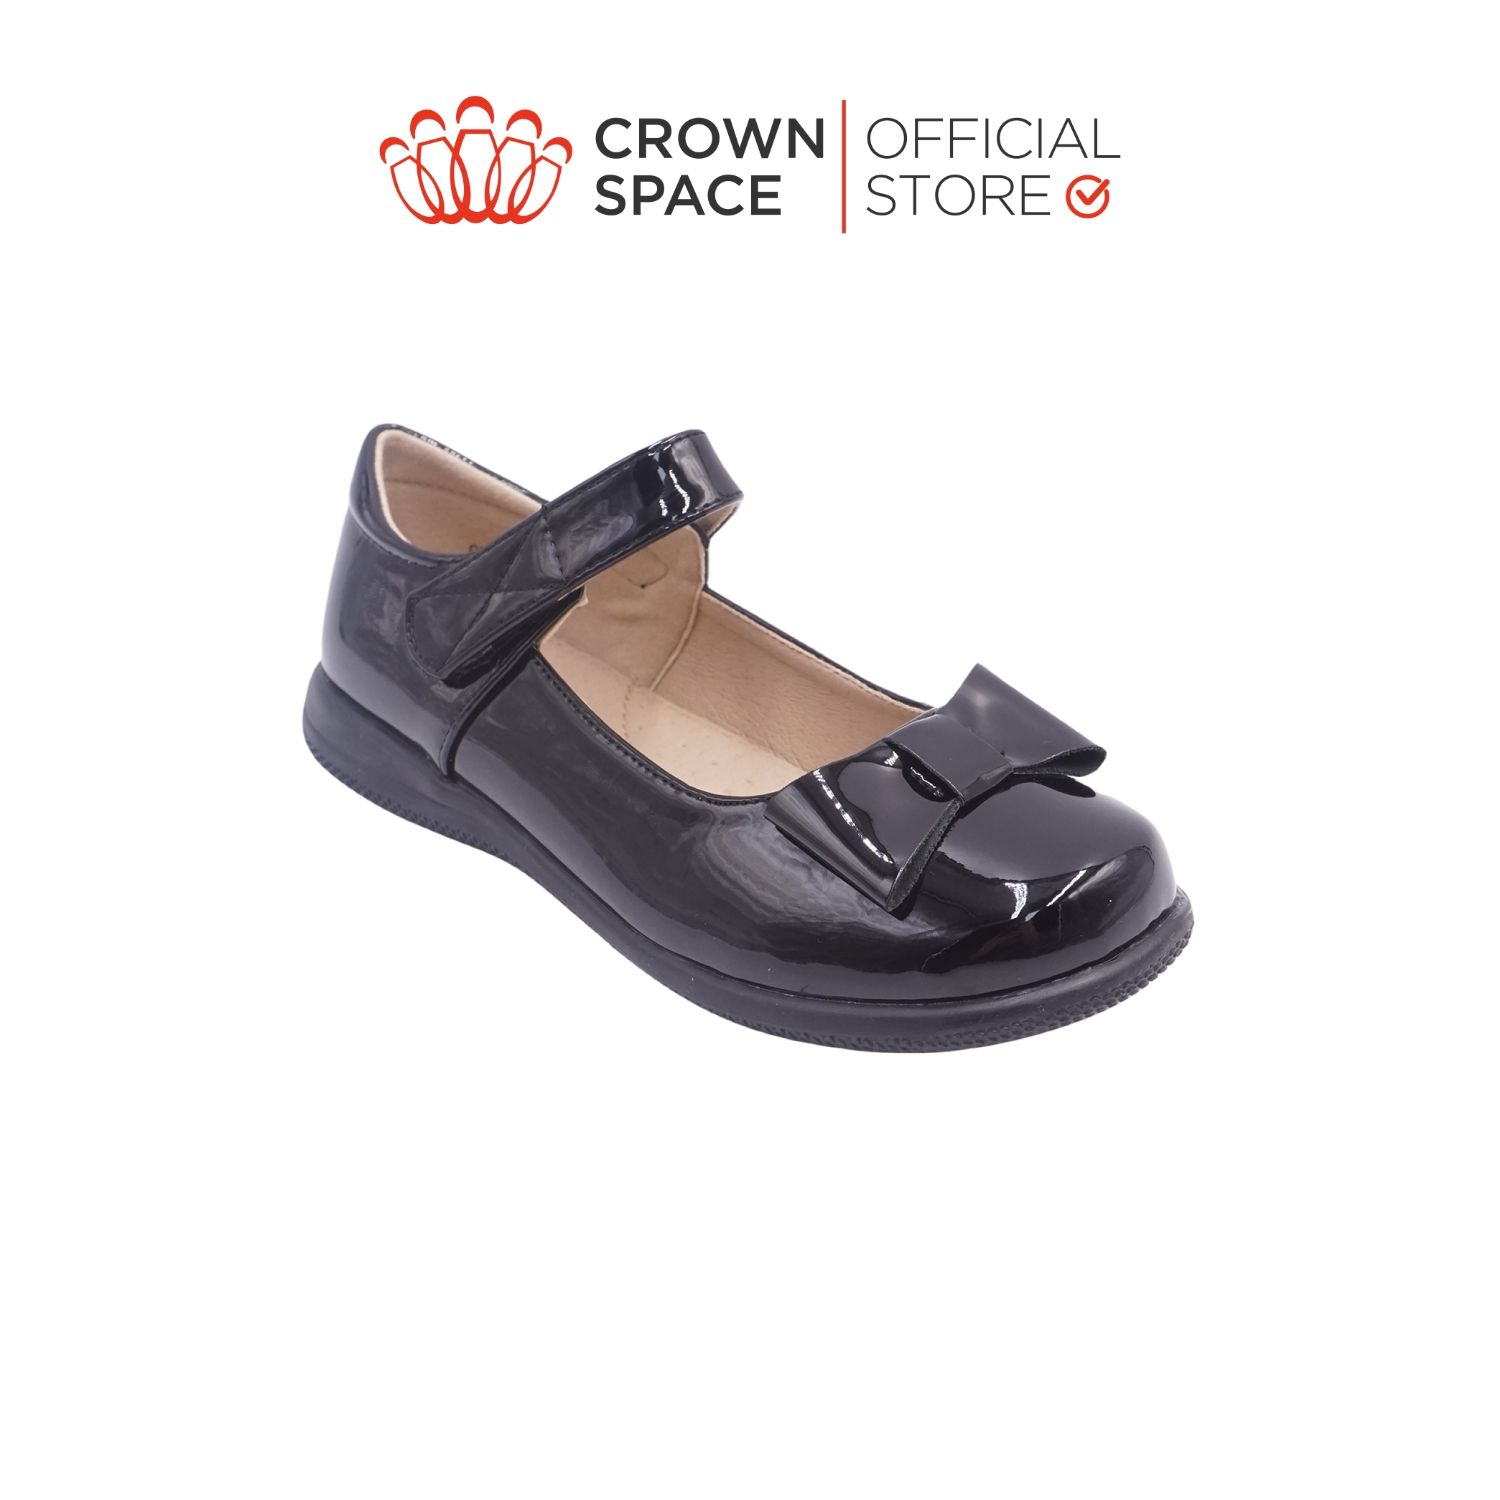  Giày Búp Bê School Shoes Đi Học Trẻ Em Cao Cấp Chính Hãng Crown Space Dành Cho Bé Gái CRUK3075 Size 30 - 38 